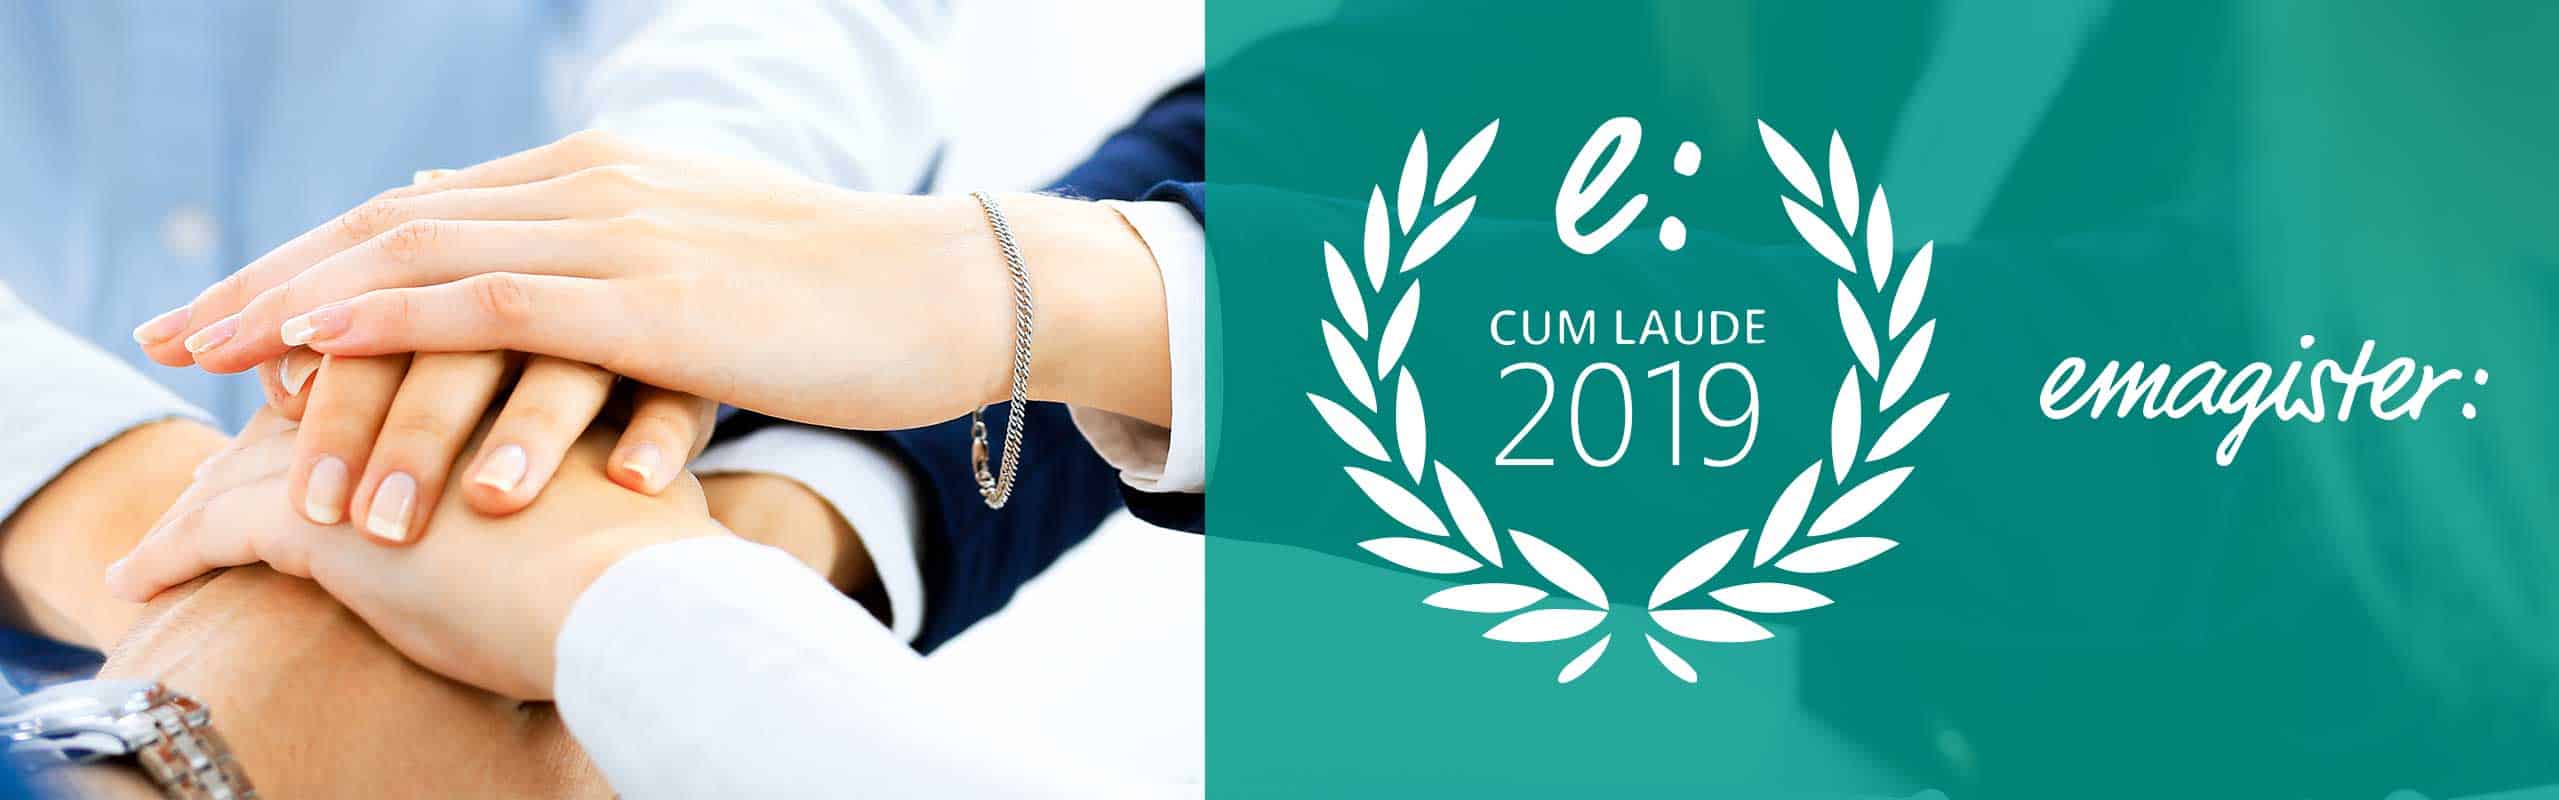 Ieeducación ha sido premiada con el sello cumplido laude 2019